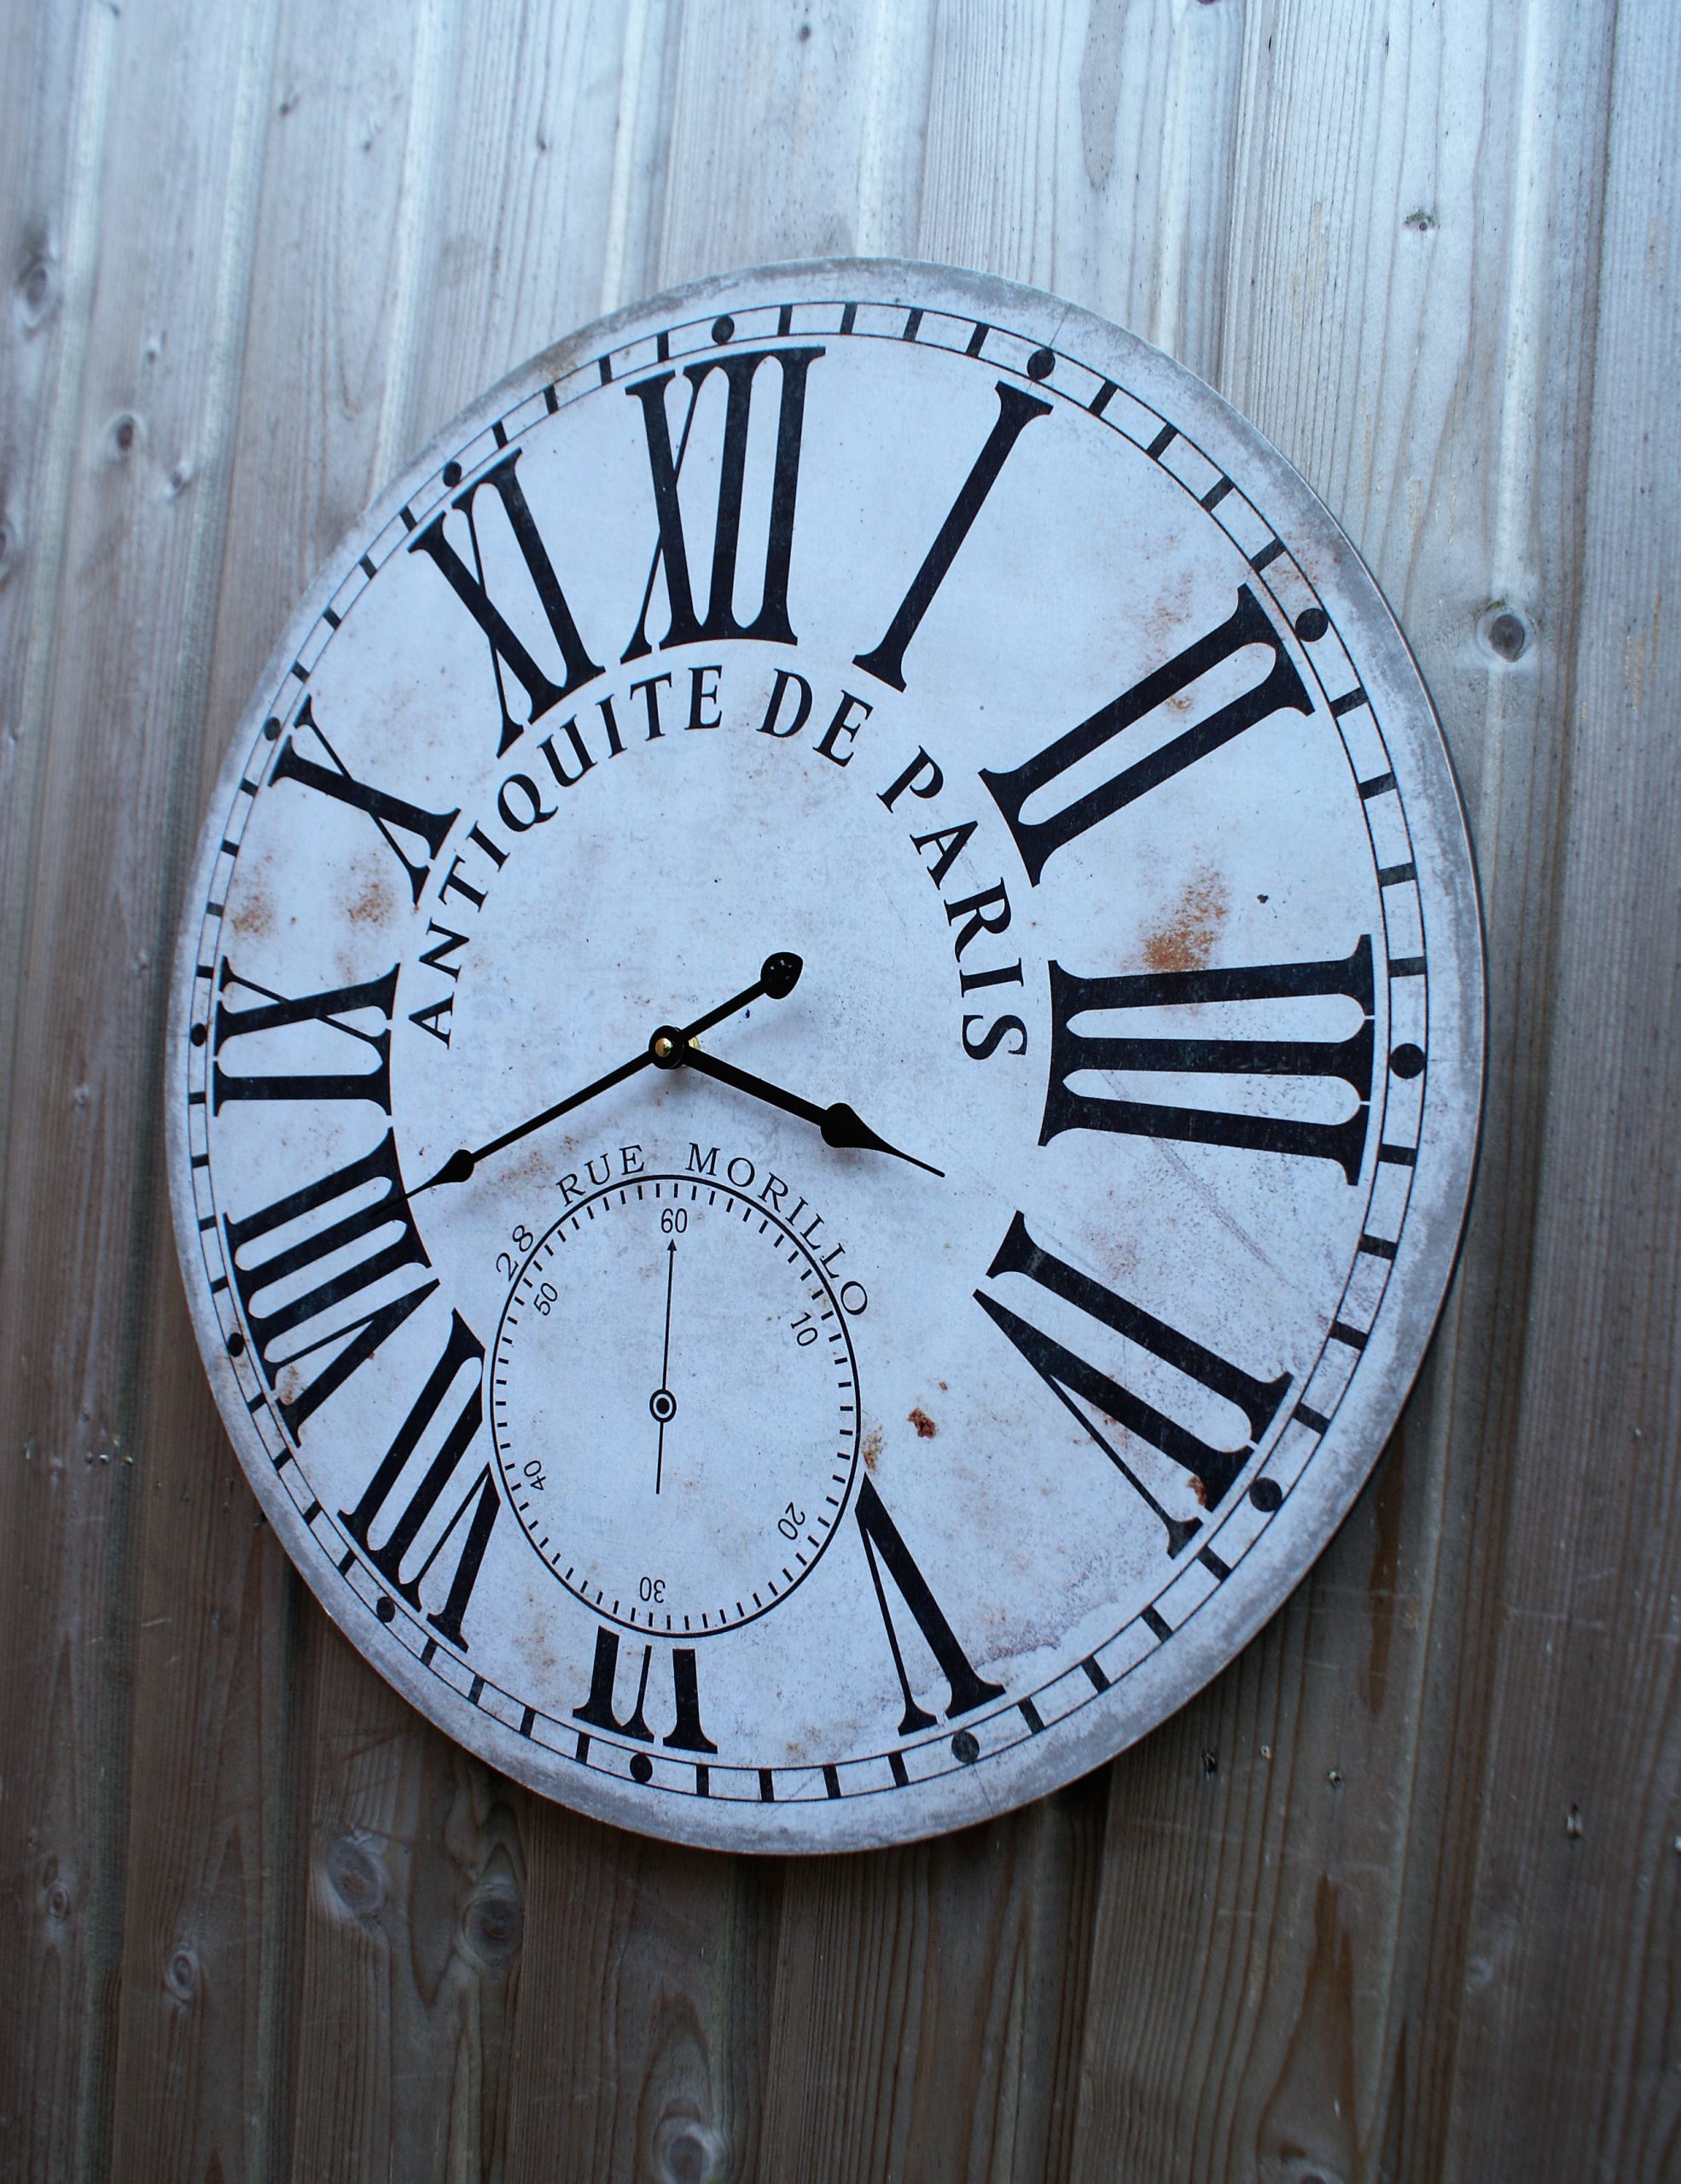 Nieuwjaar puberteit boerderij Landelijke klok 60 cm - Landelijke klokken vindt u bij de Grenenhoeve